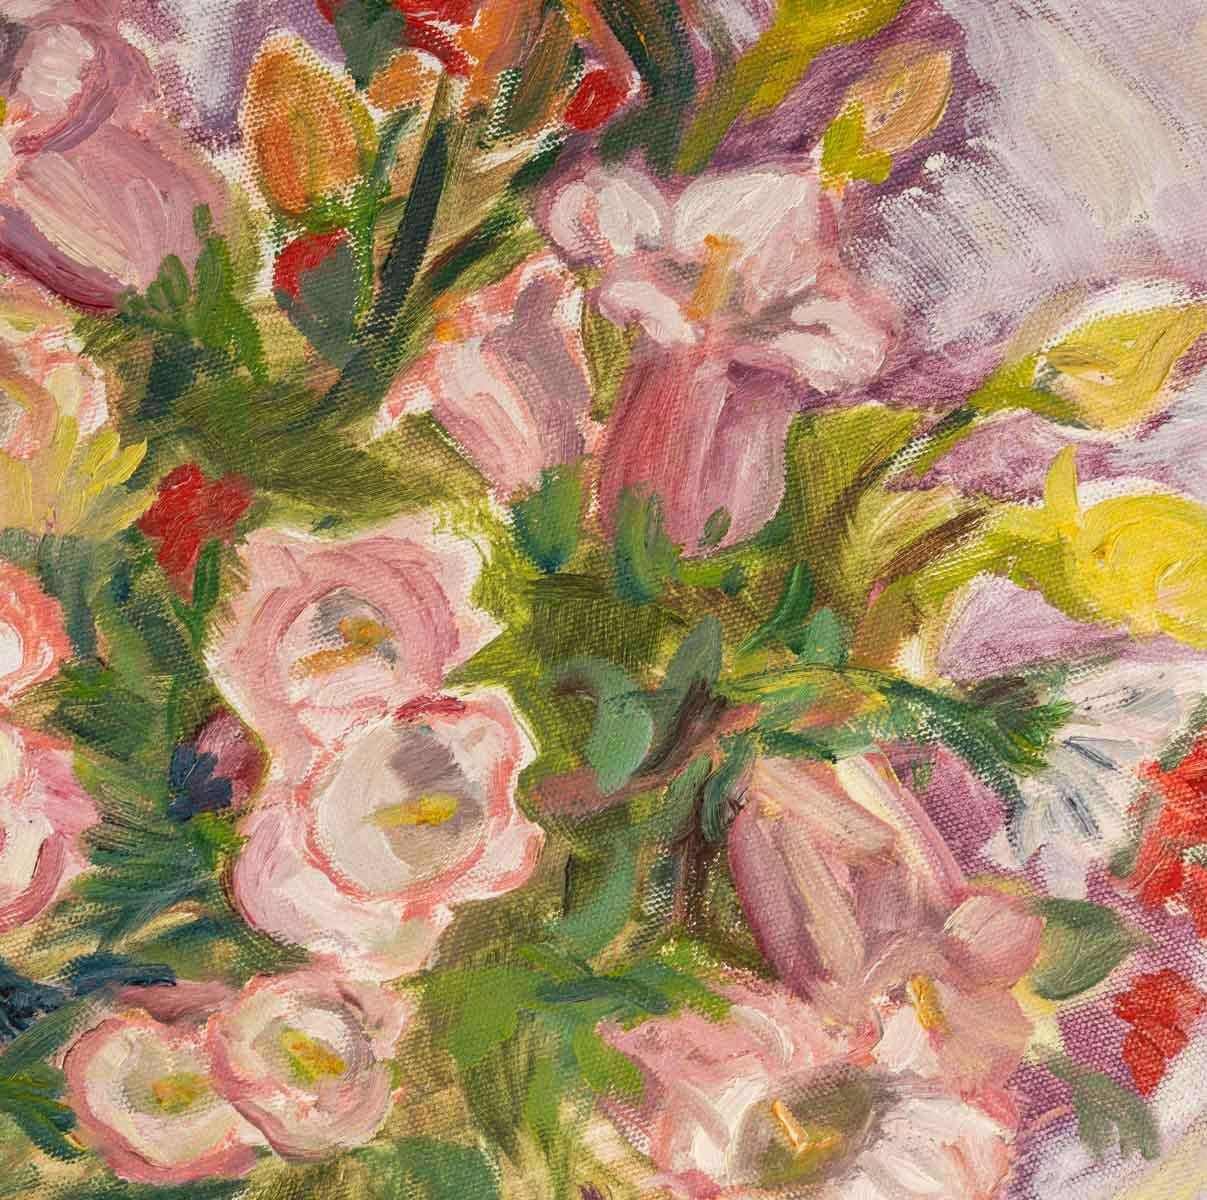 Bouquet de fleurs
Peinture sur toile ronde, 20e siècle.
Mesures : D : 40 cm, D : 2 cm.